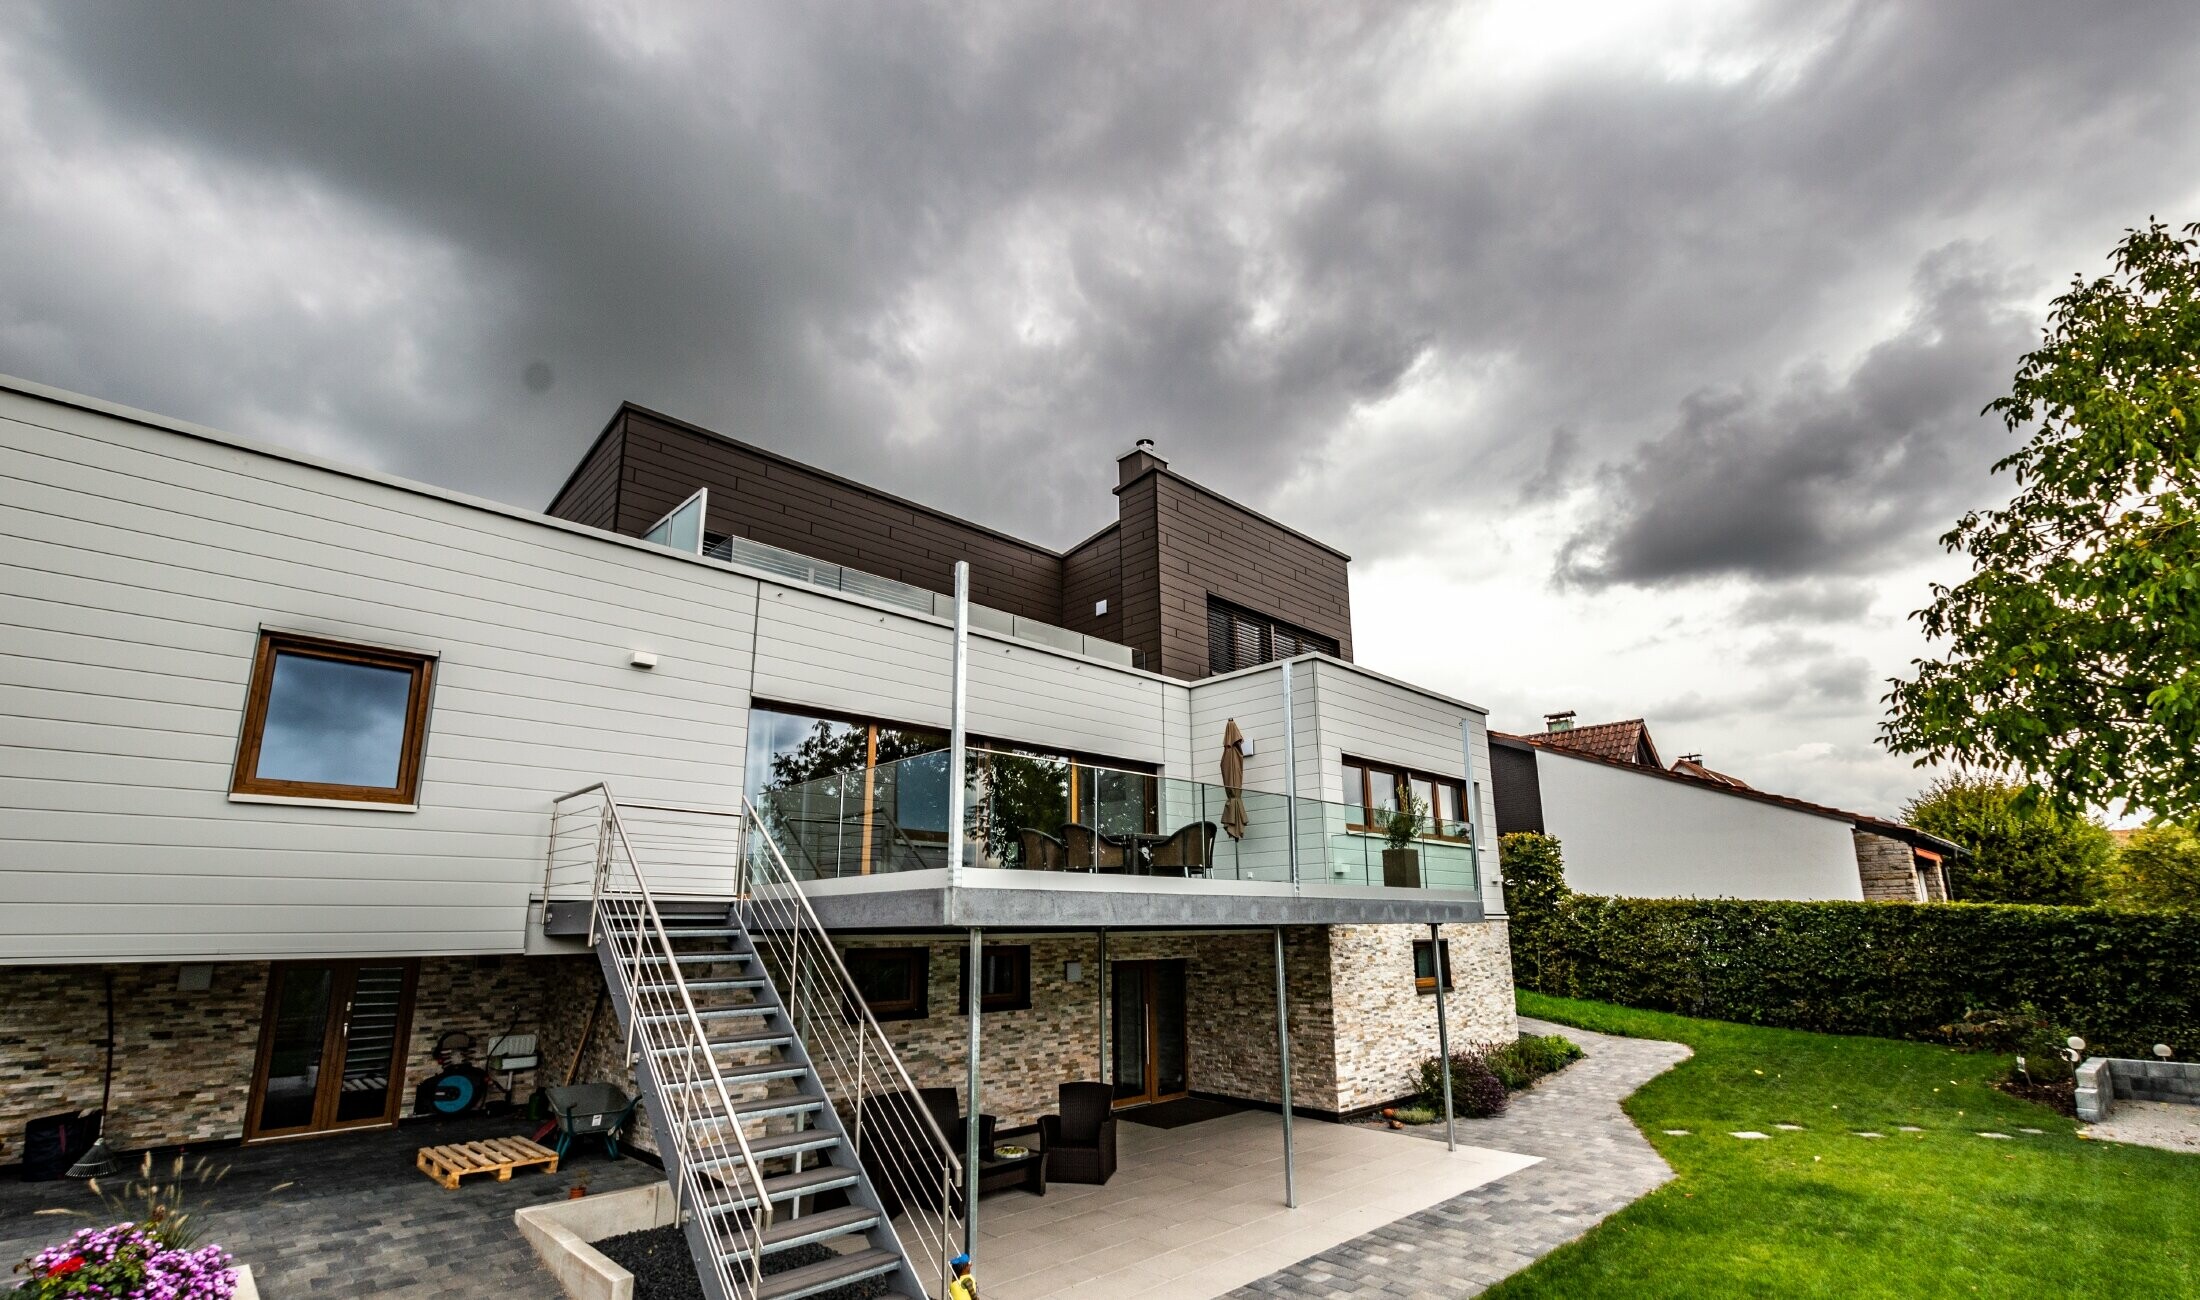 Casa residenziale con copertura piatta e facciata bianca e marrone con doghe PREFA posate orizzontalmente.